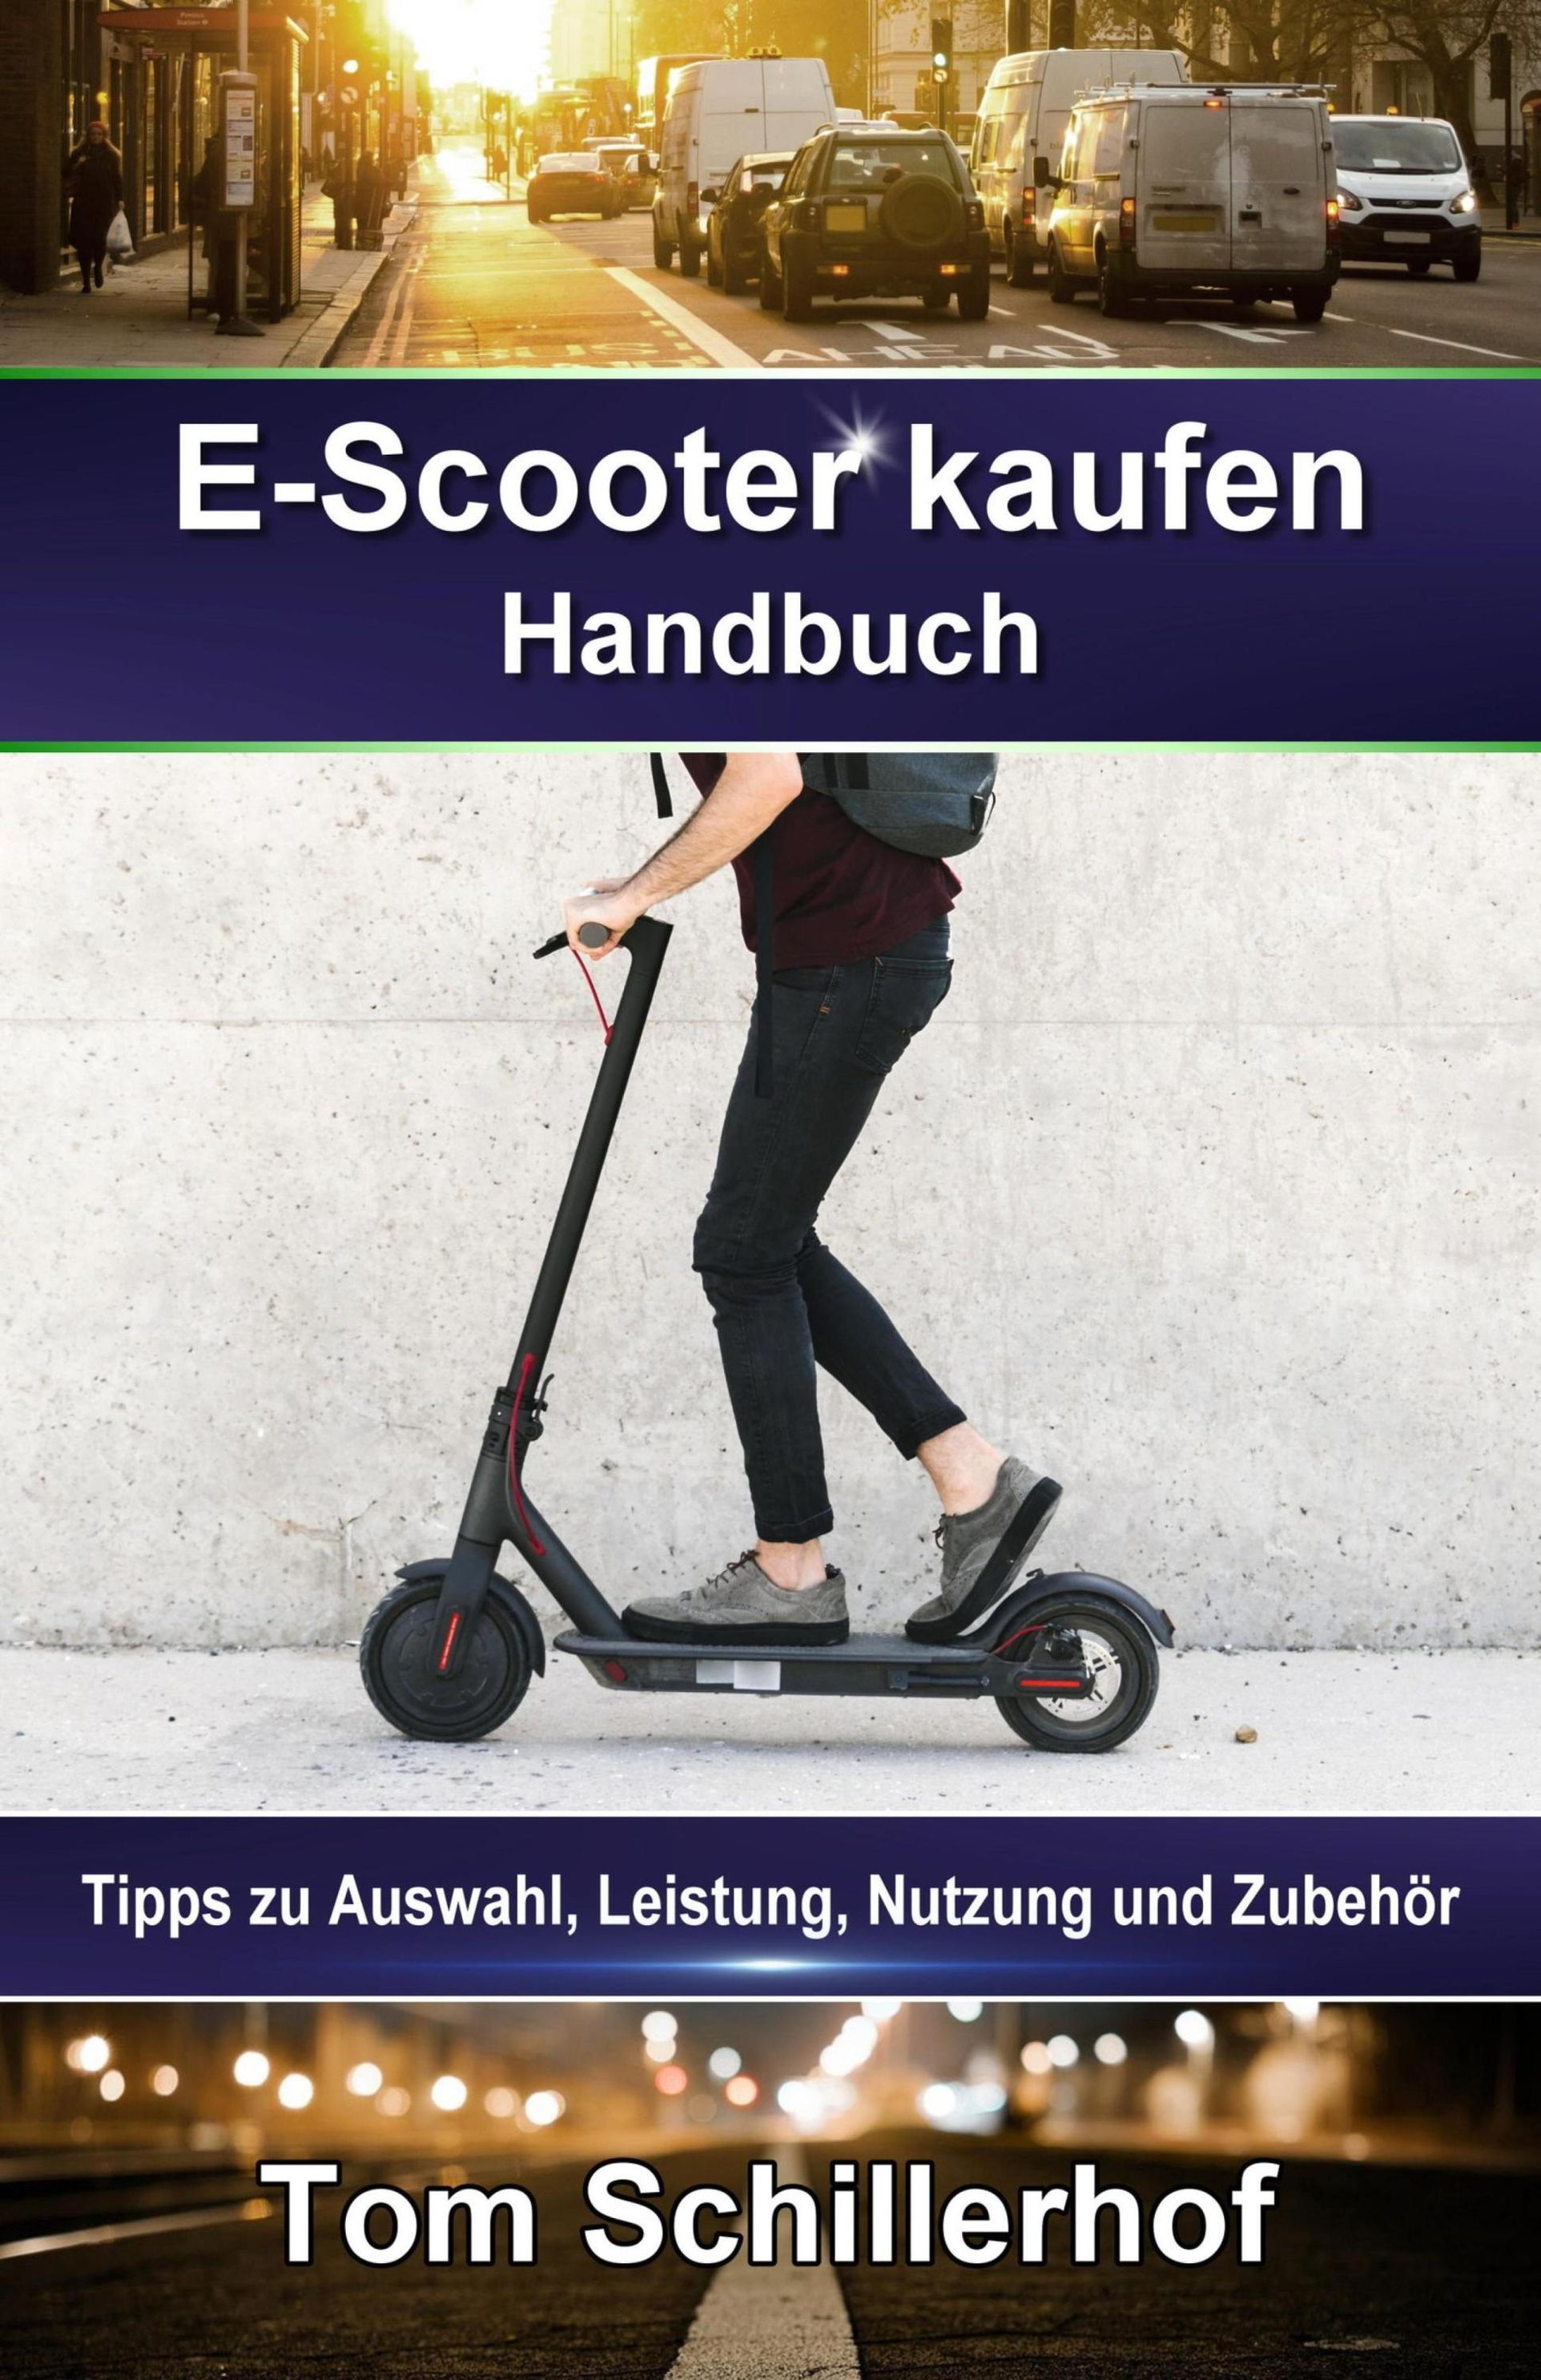 E-Scooter kaufen - Handbuch: Tipps zu Auswahl, Leistung, Nutzung und Zubehör  eBook v. Tom Schillerhof | Weltbild